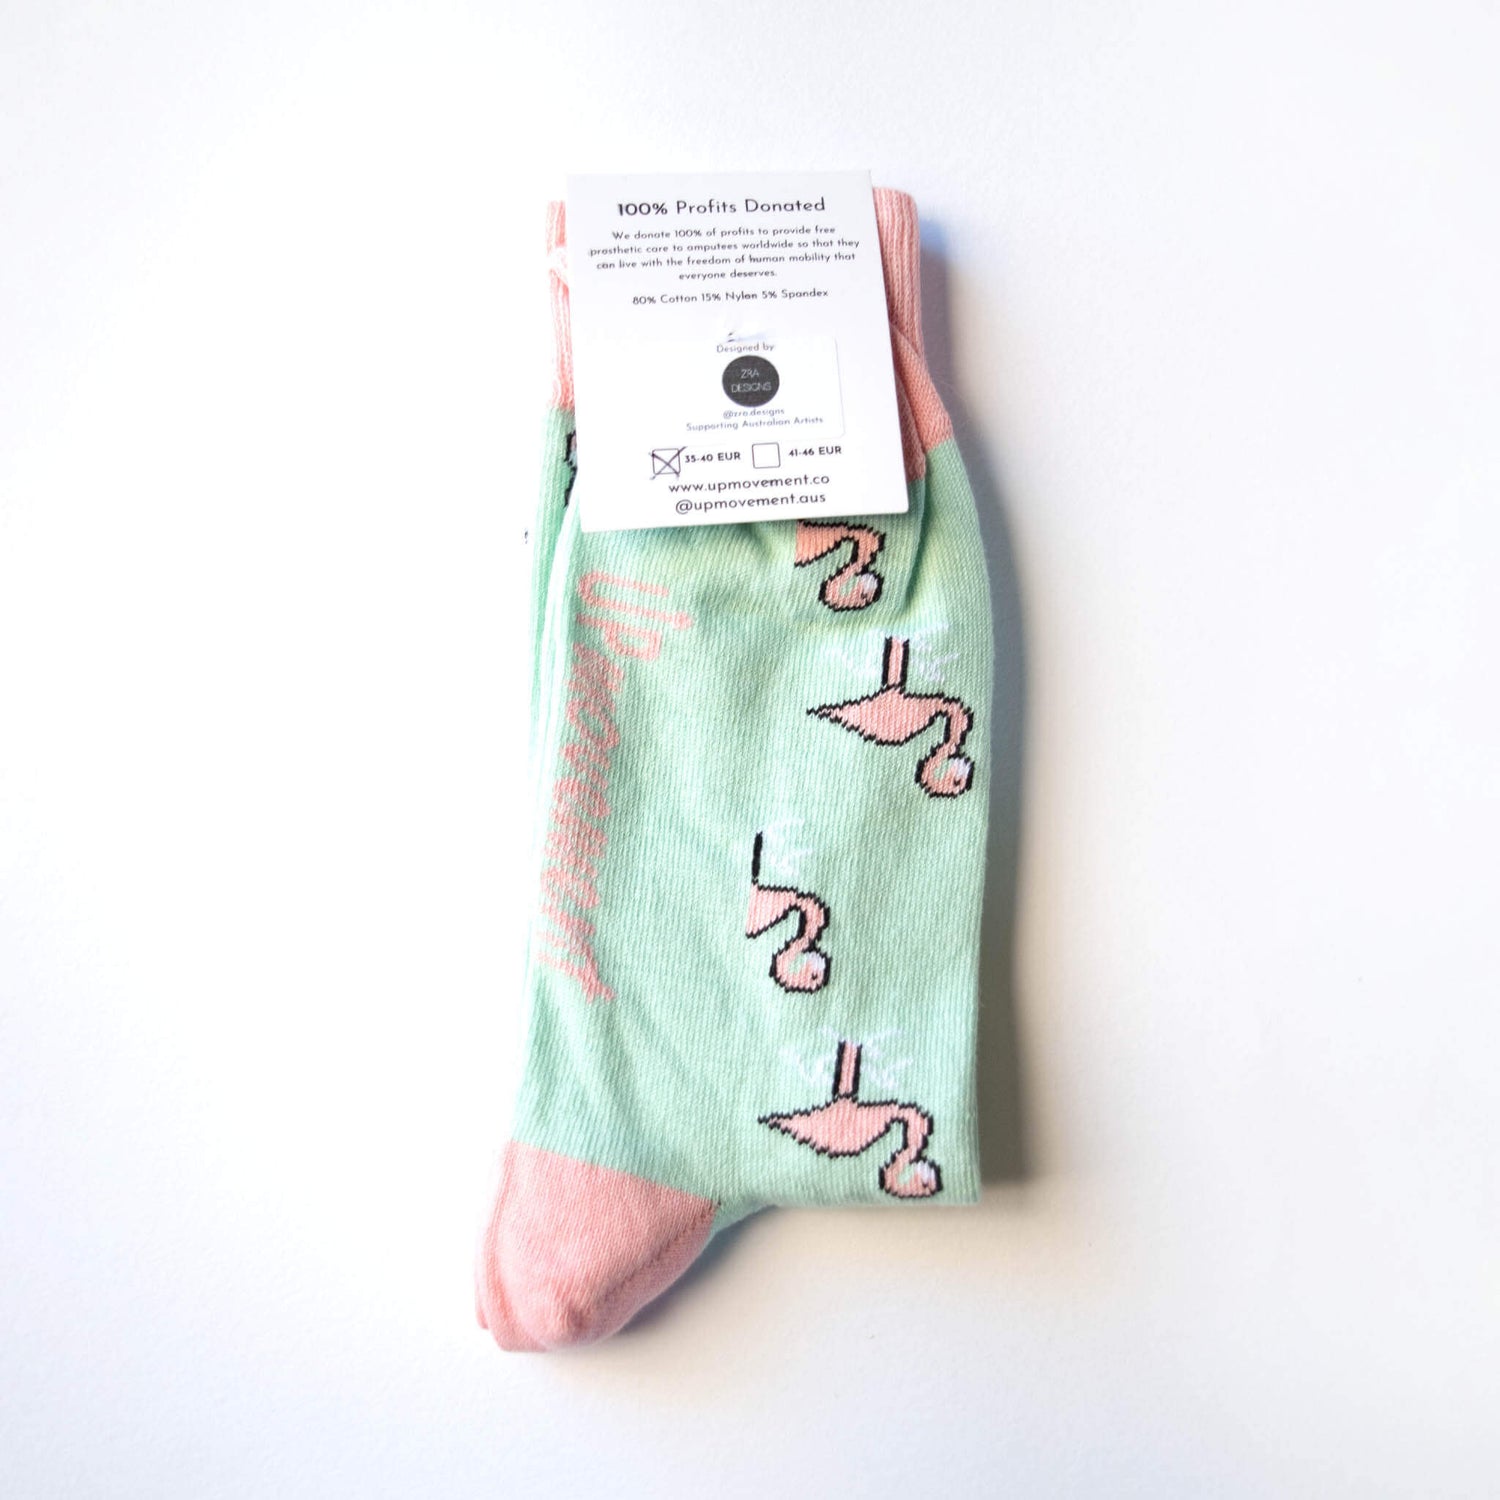 Australian Socks For Good Flamingo Socks